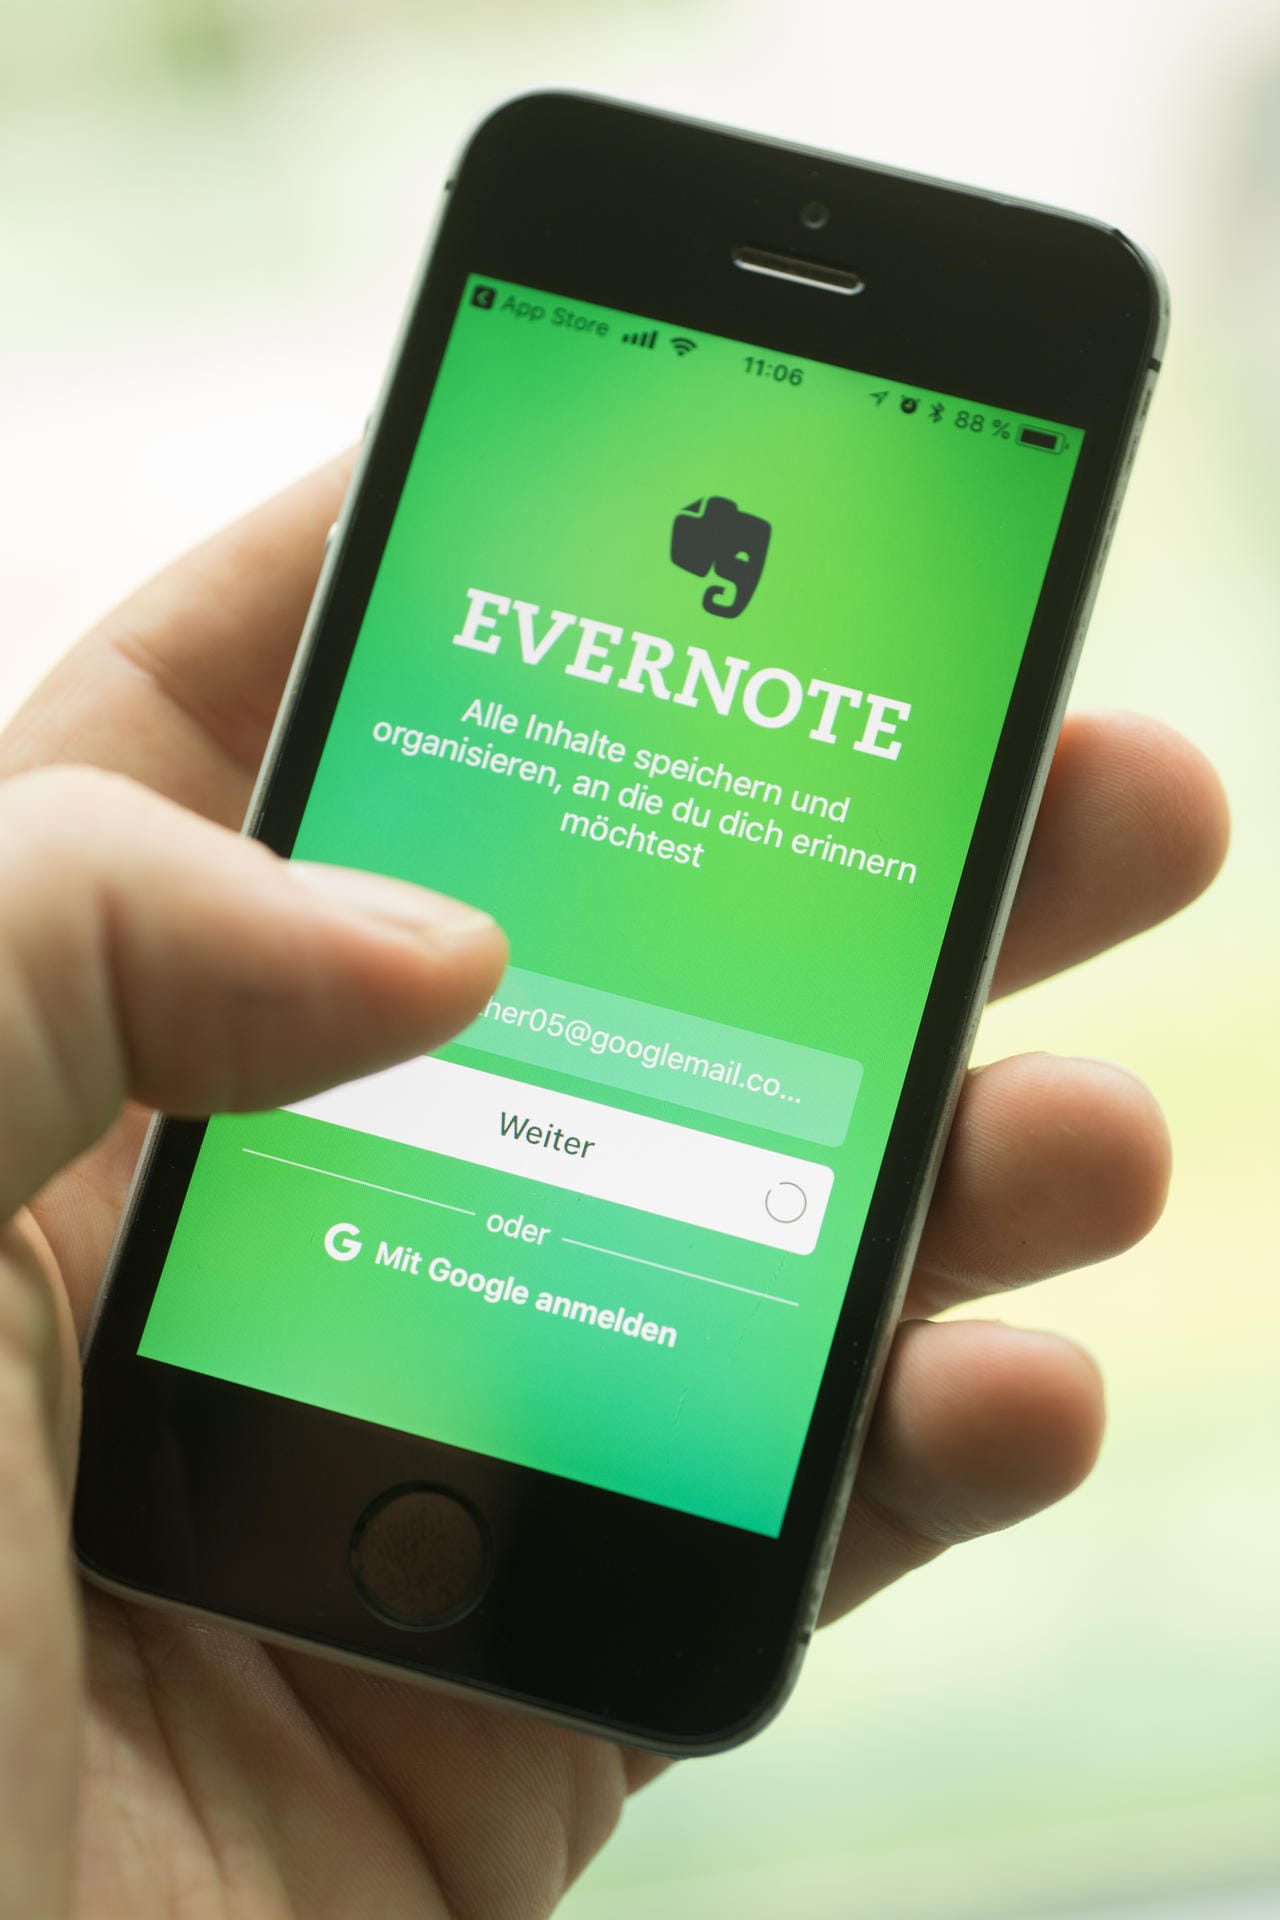 Evernote: Die kostenfreie Version der App ermöglicht das Erstellen von Notizen, die mit einem anderen Gerät geteilt werden können.